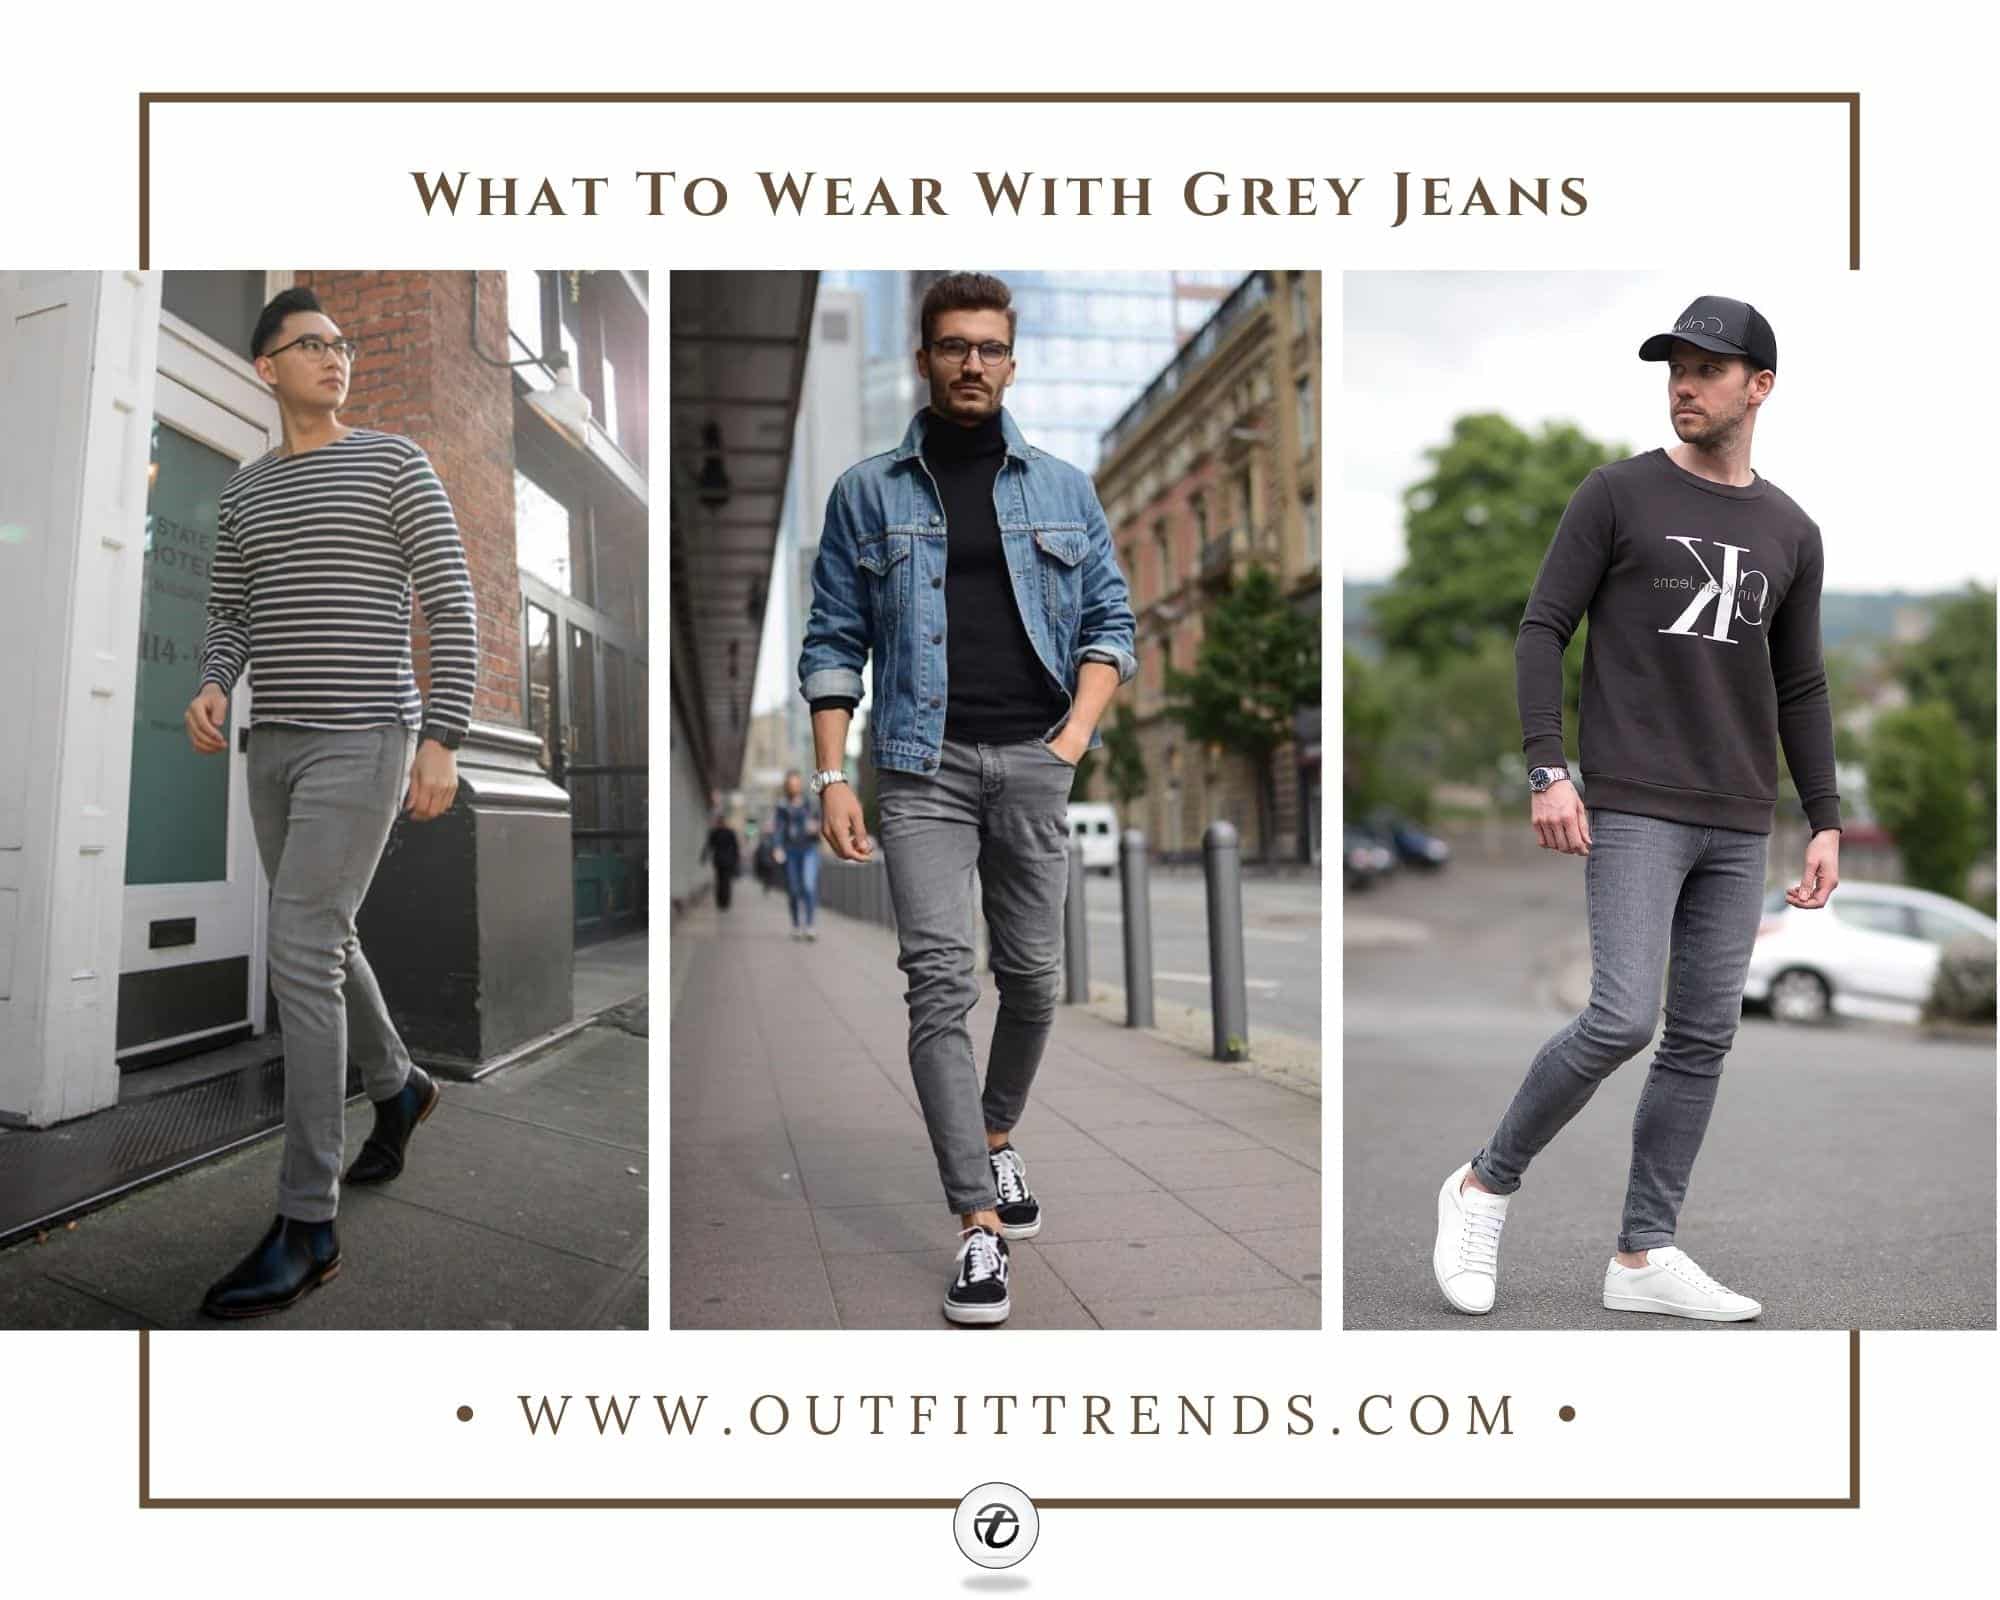 Actualizar 84+ imagen light grey jeans outfit mens